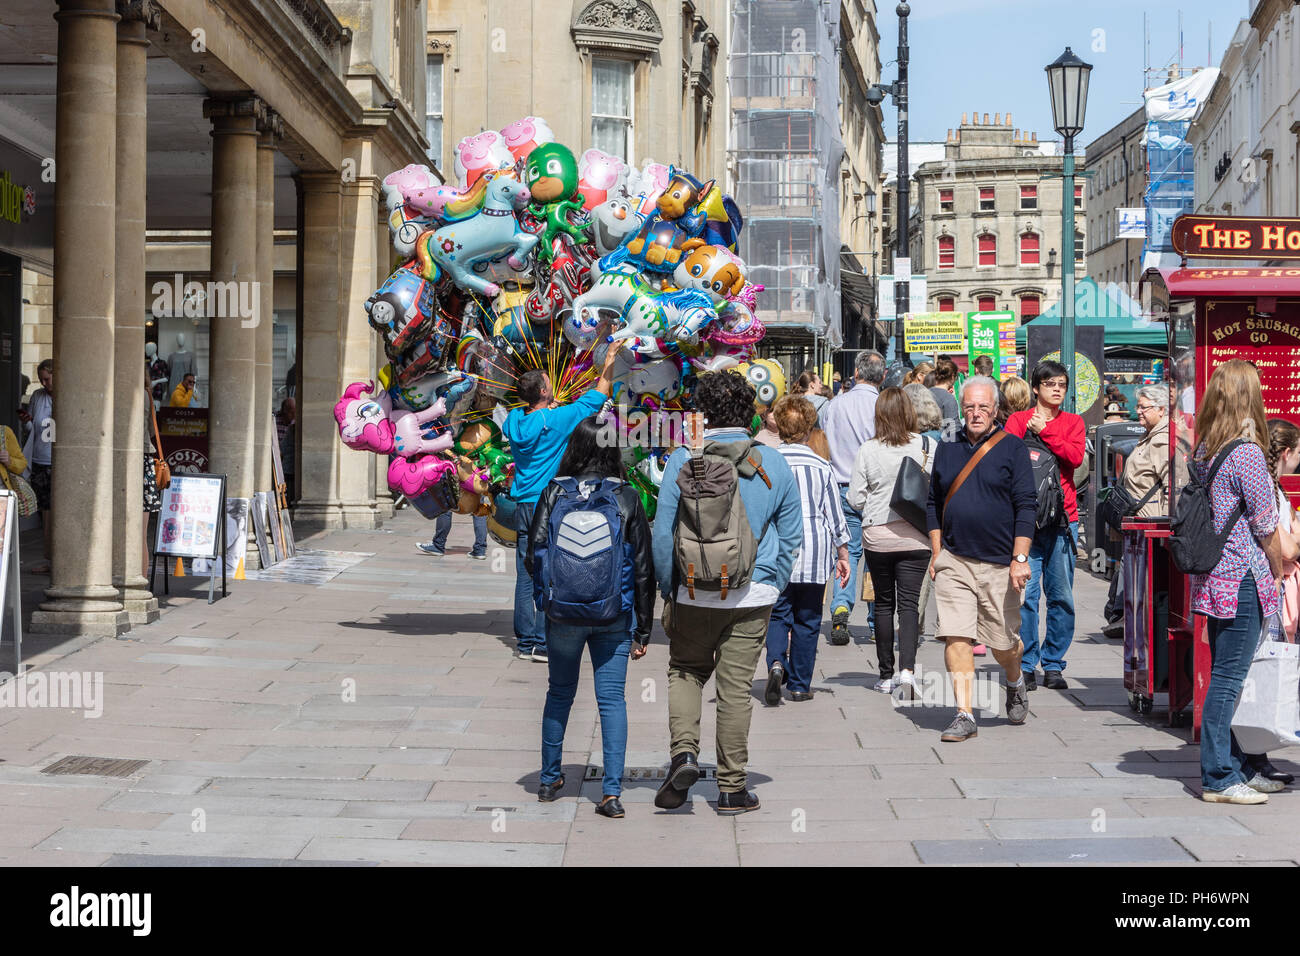 Vue arrière d'un vendeur de ballons gonflés à l'hélium de caractères lumineux dans la rue de décrochage la ville de Bath Banque D'Images